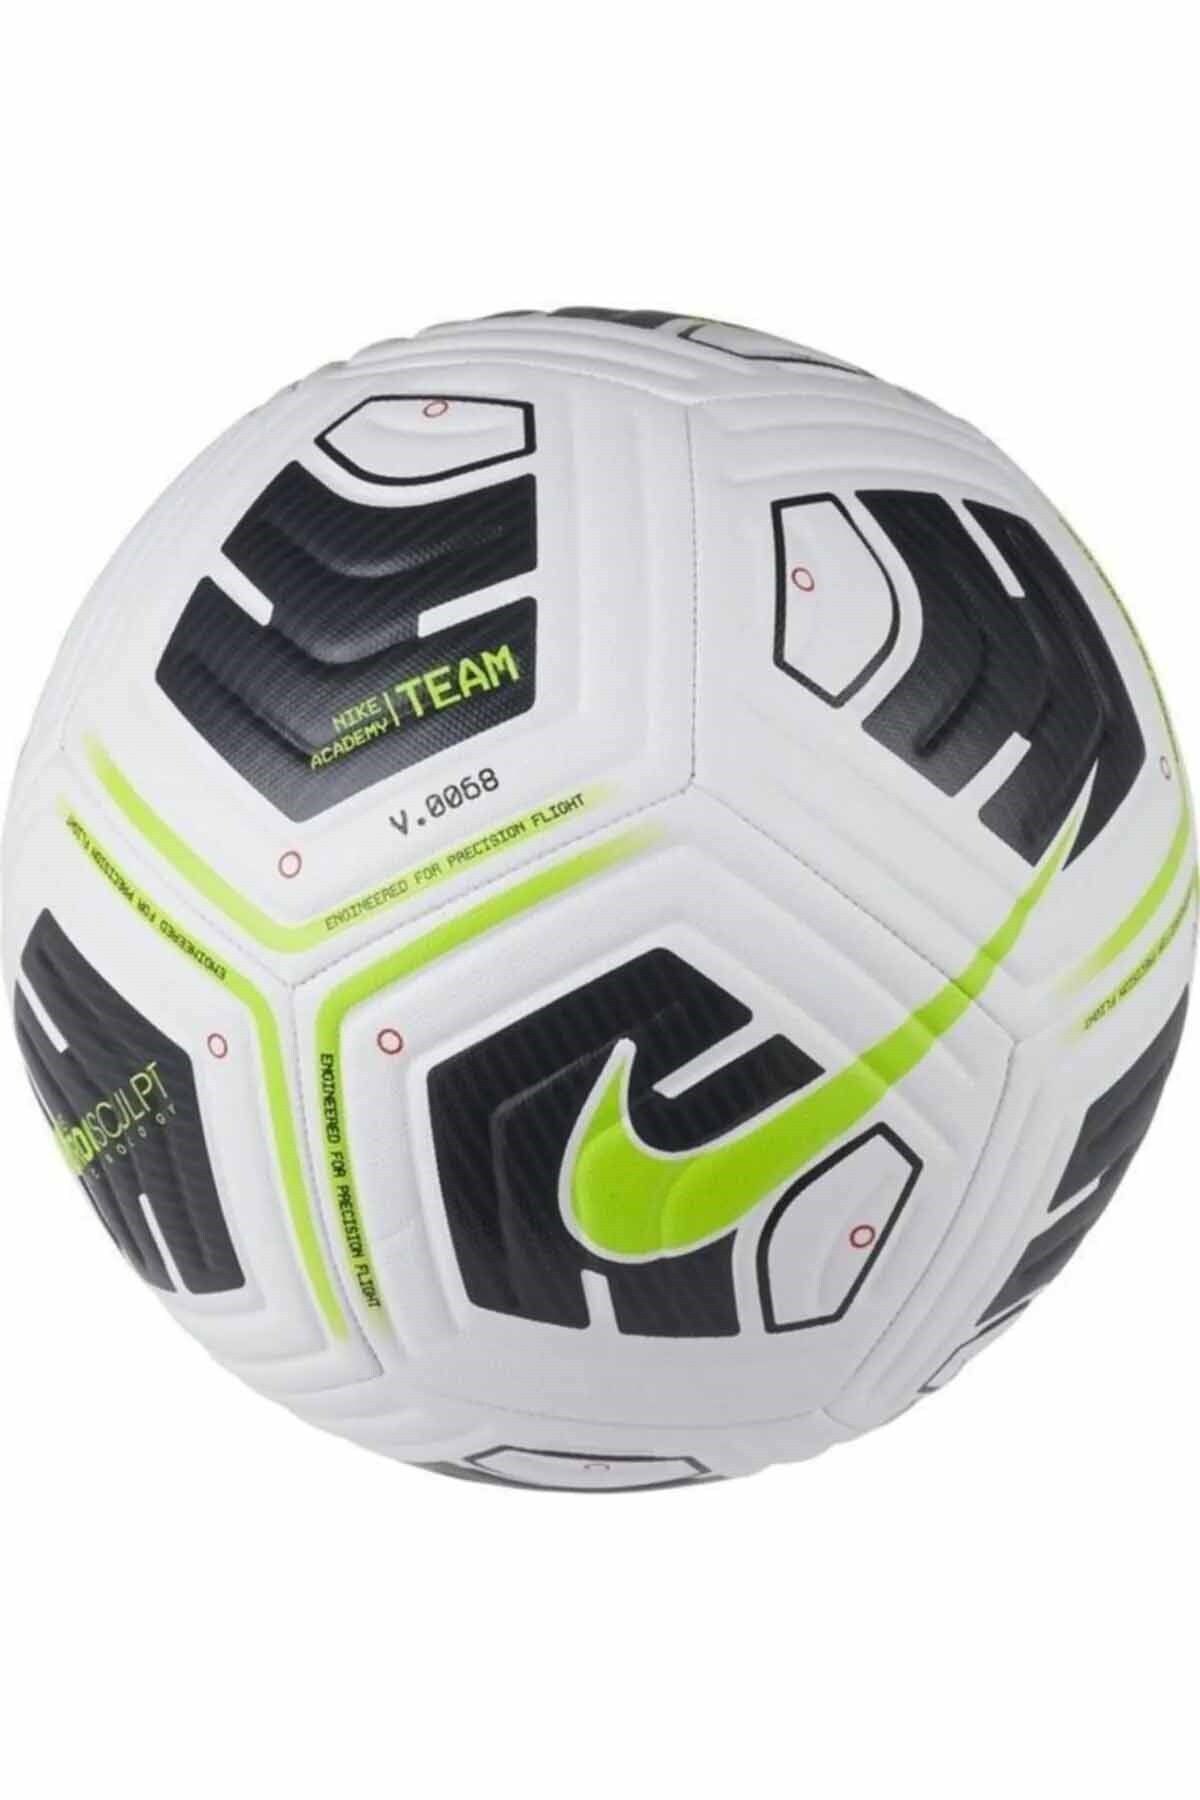 Nike Strike Team Int. Match Standart Unisex Futbol Topu Cu8047-100-beyaz-y.